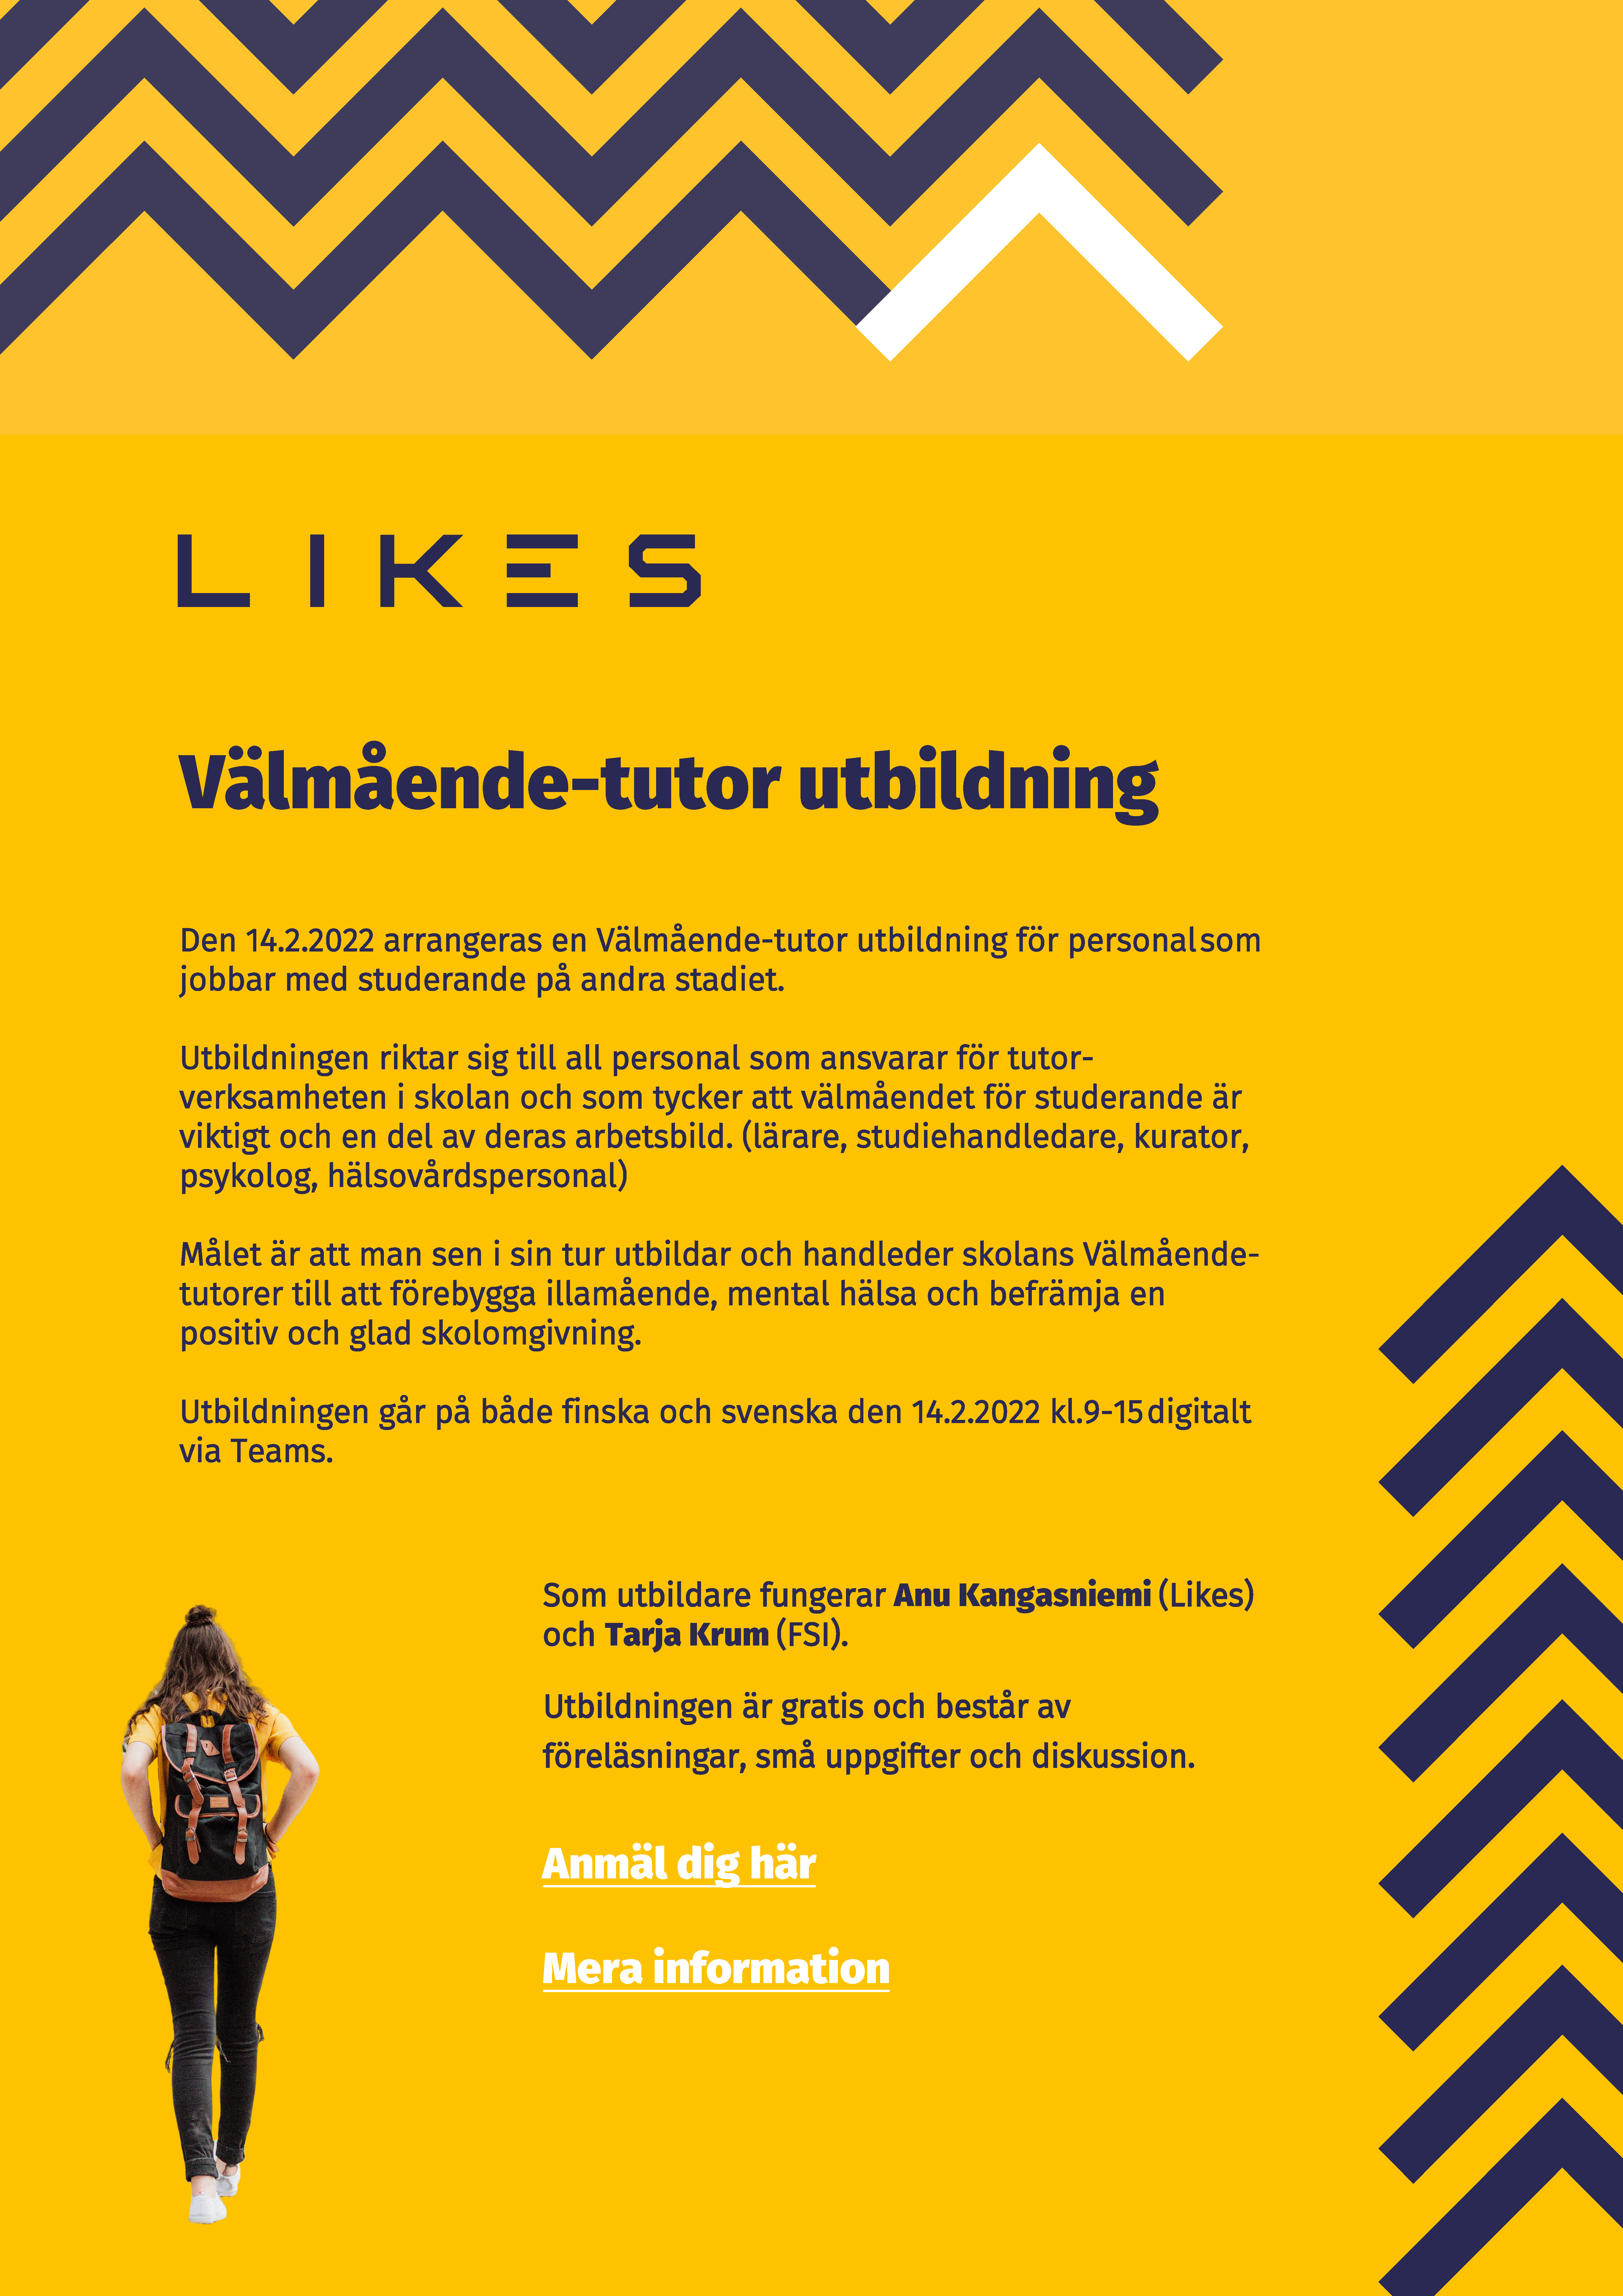 En affisch som marknadsför en välmående tutor utbildning på svenska.